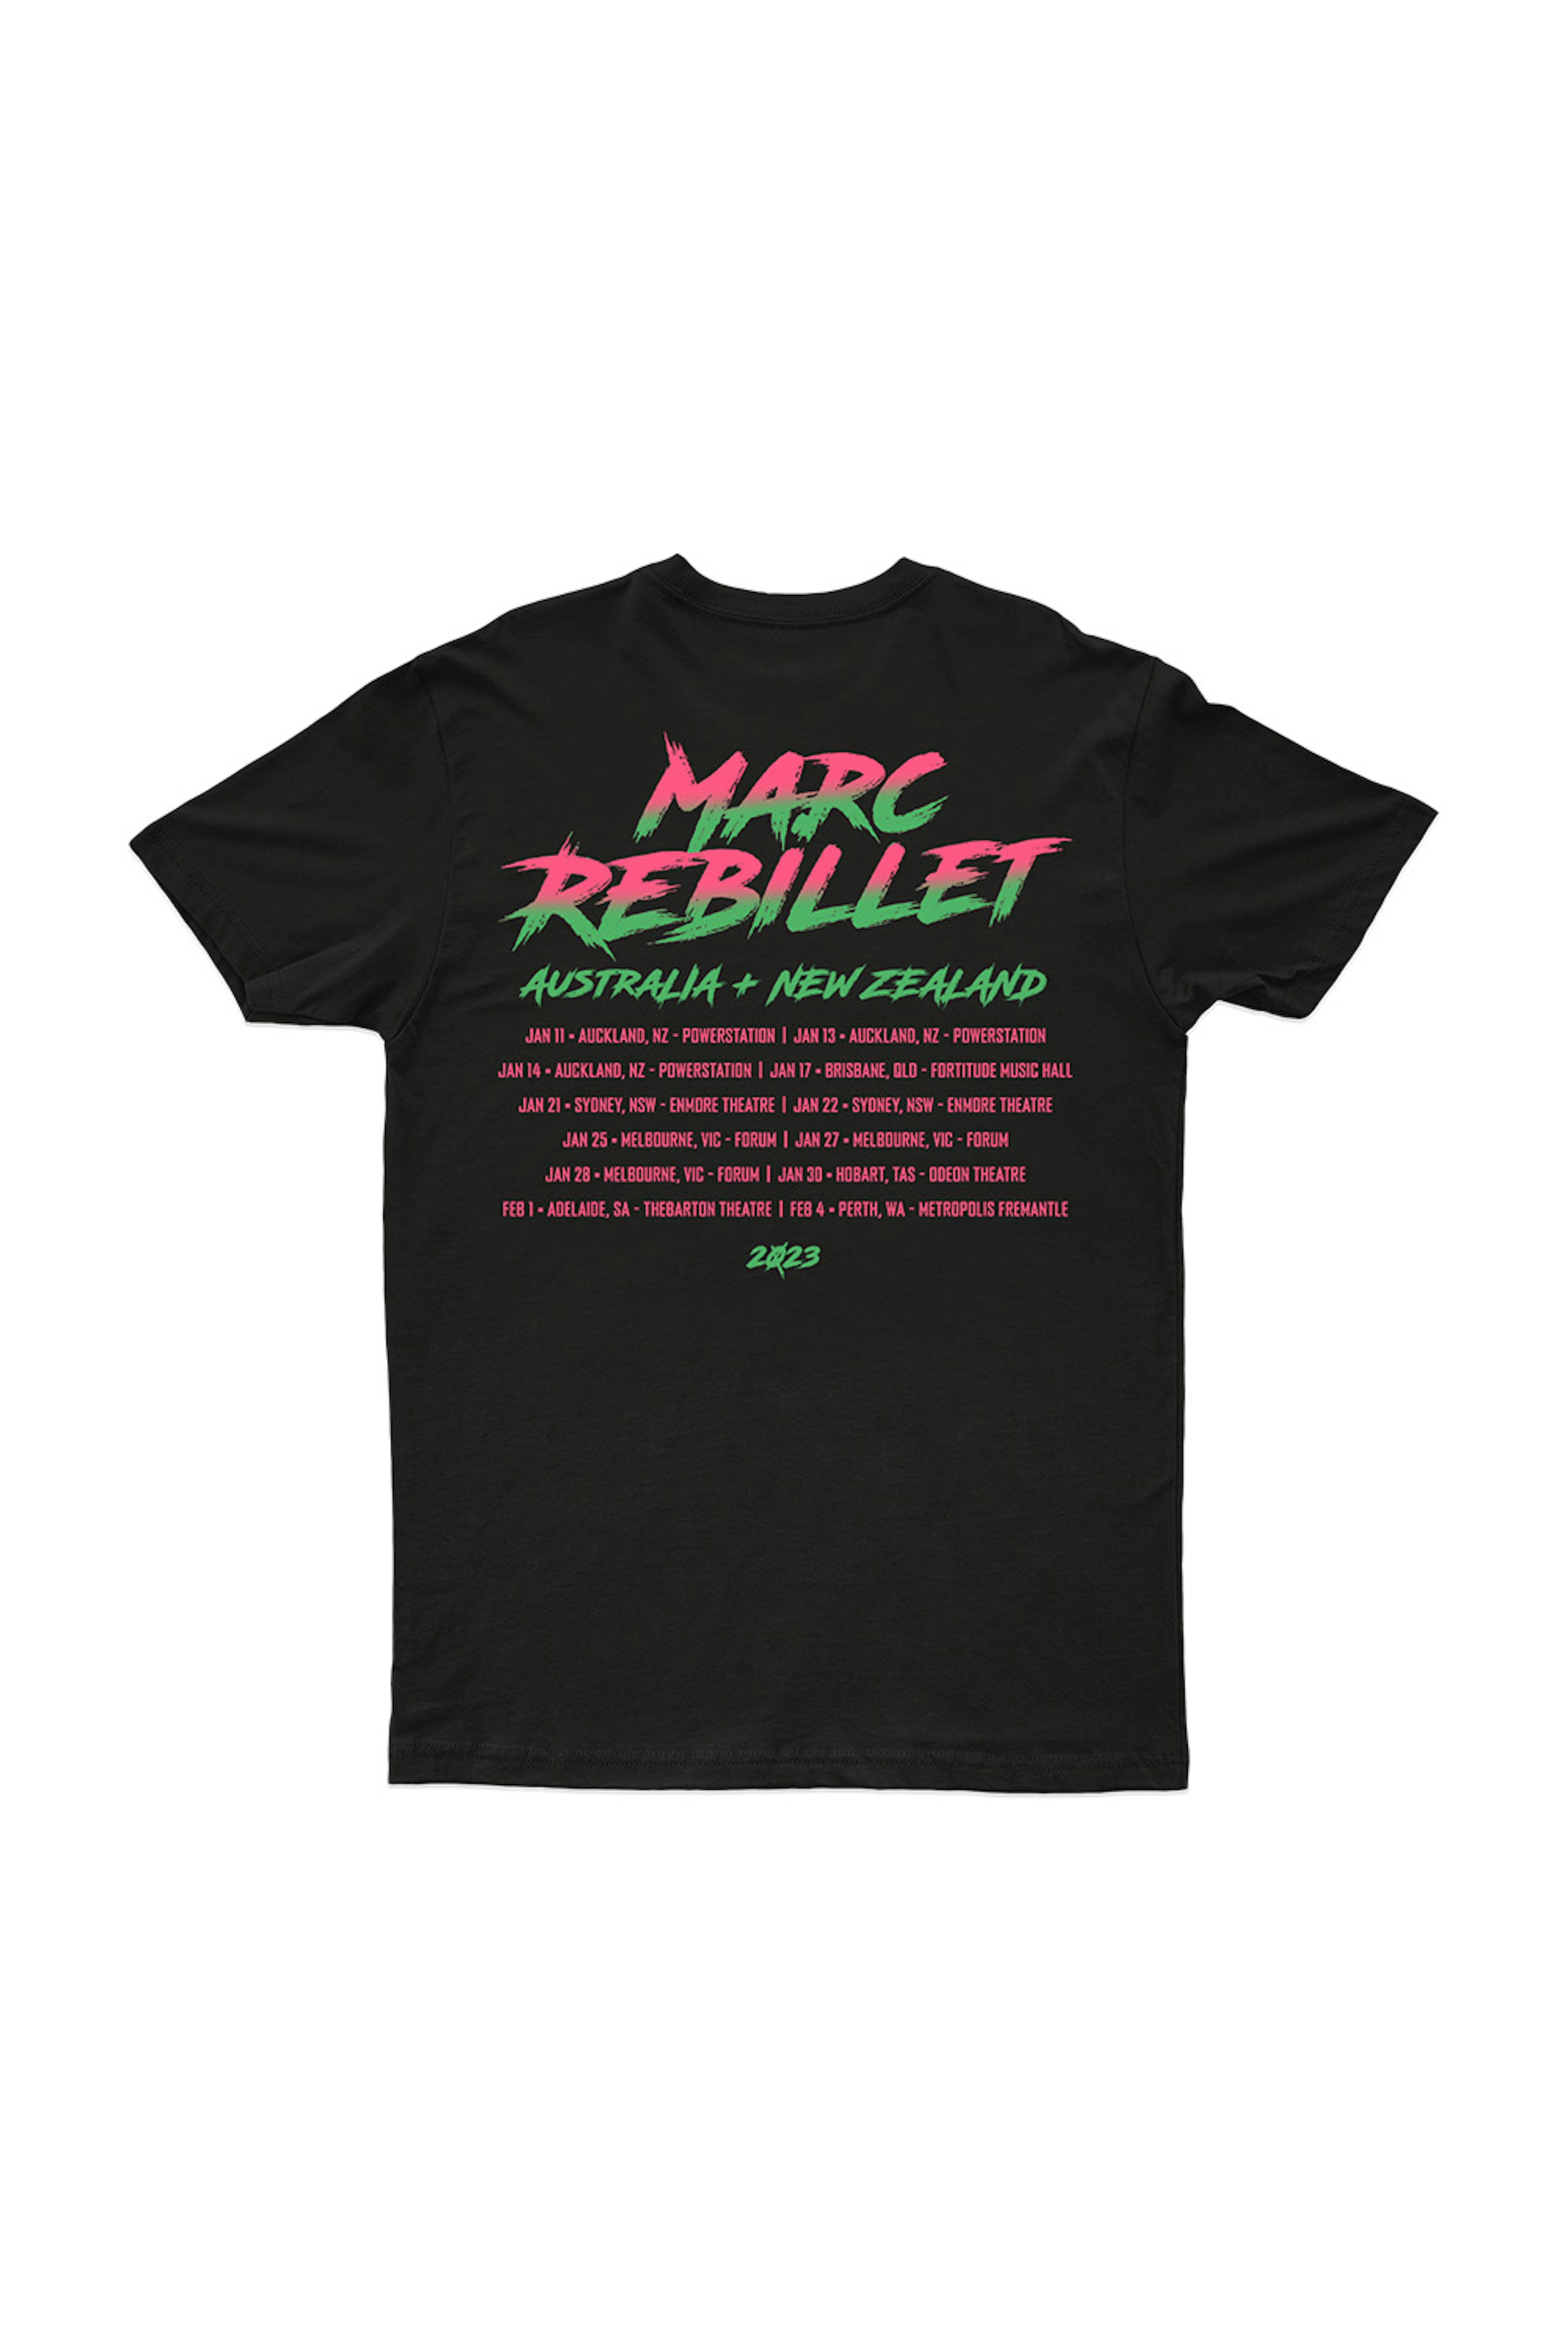 Marc Rebillet Croc Black Tshirt